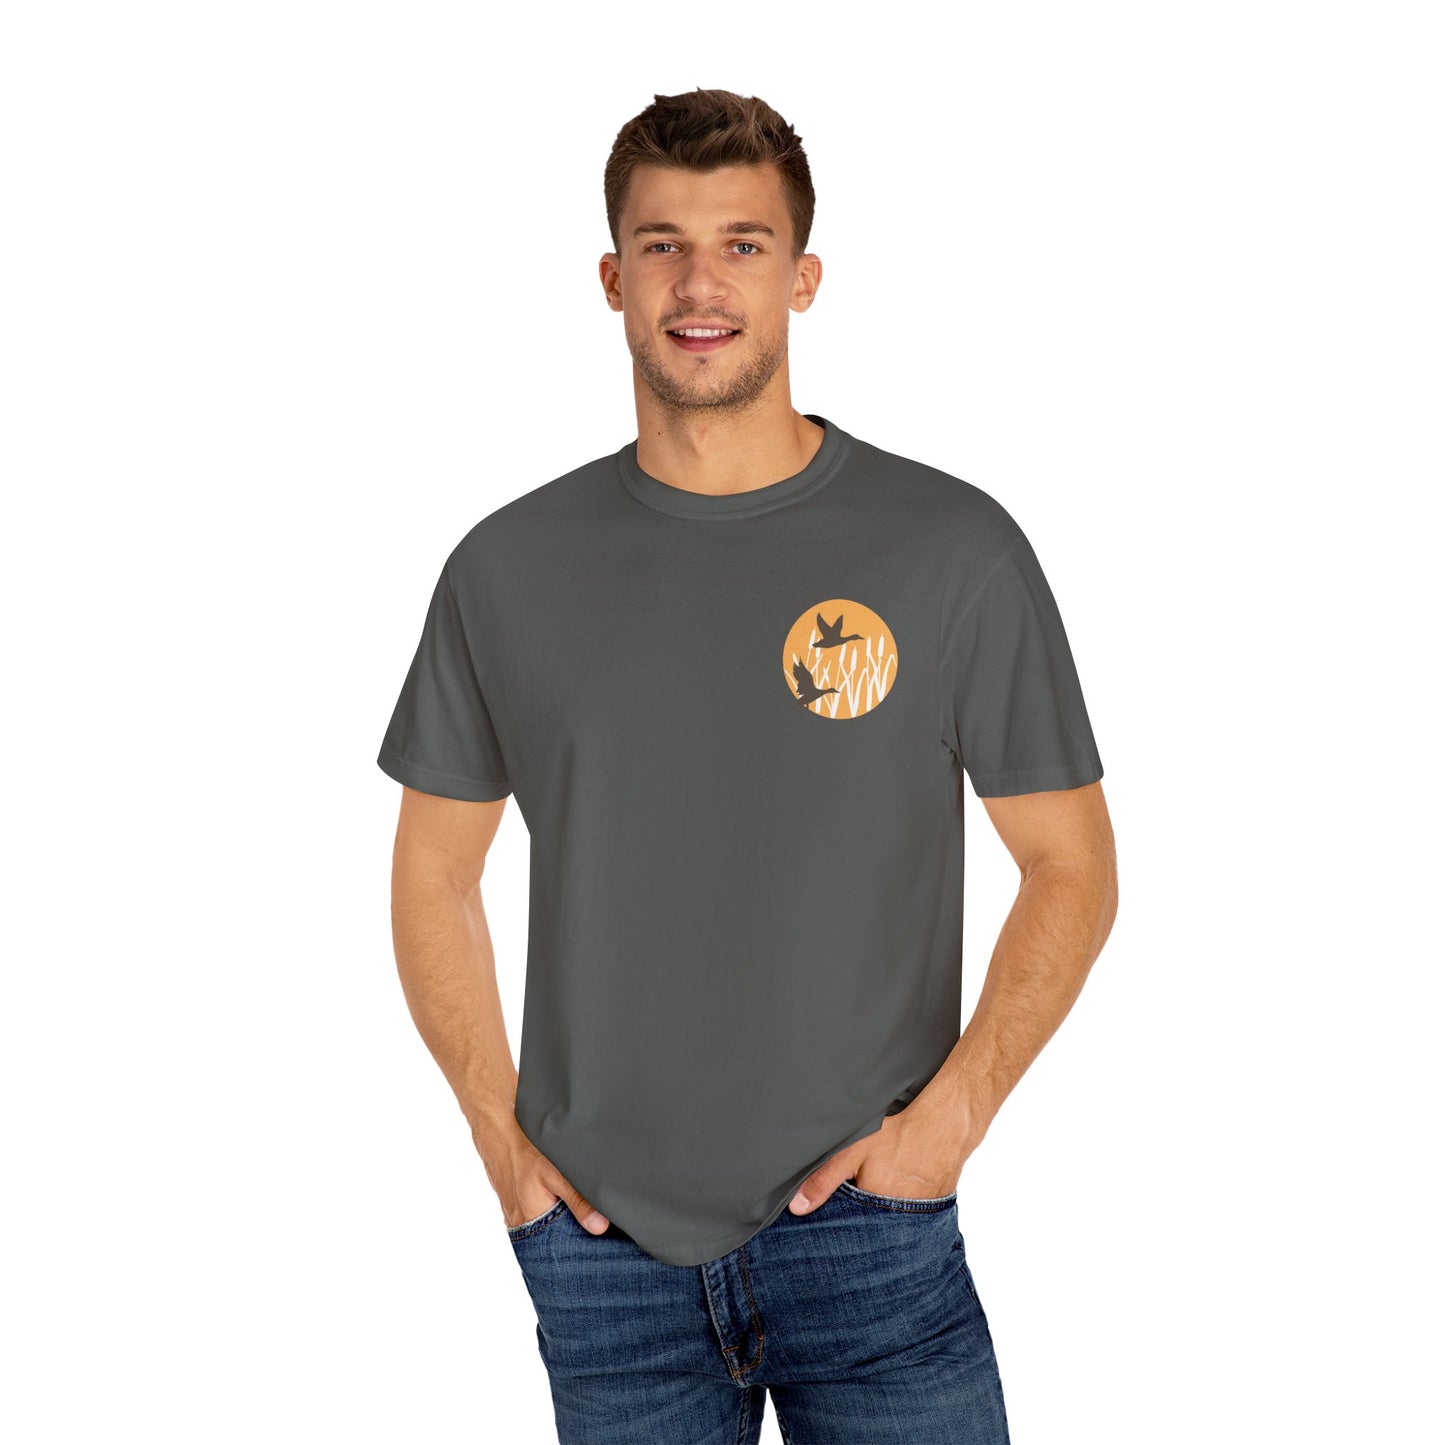 Ducks In Flight Men & Women's Comfort Colors T-shirt